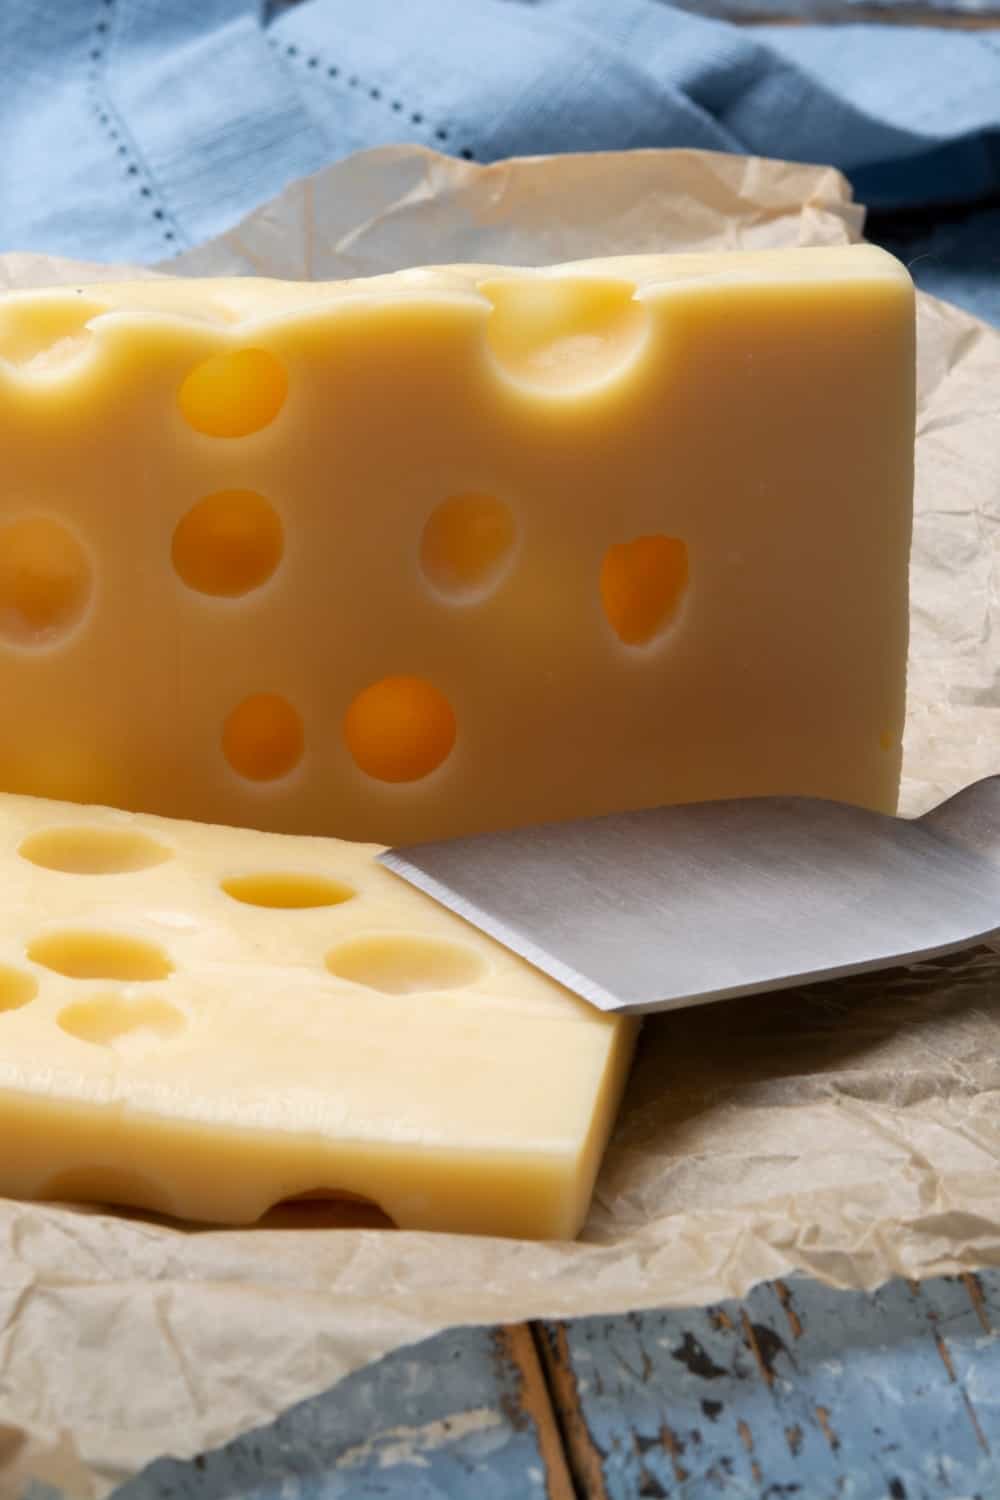 Primer plano de dos bloques de queso semiduro emmental francés